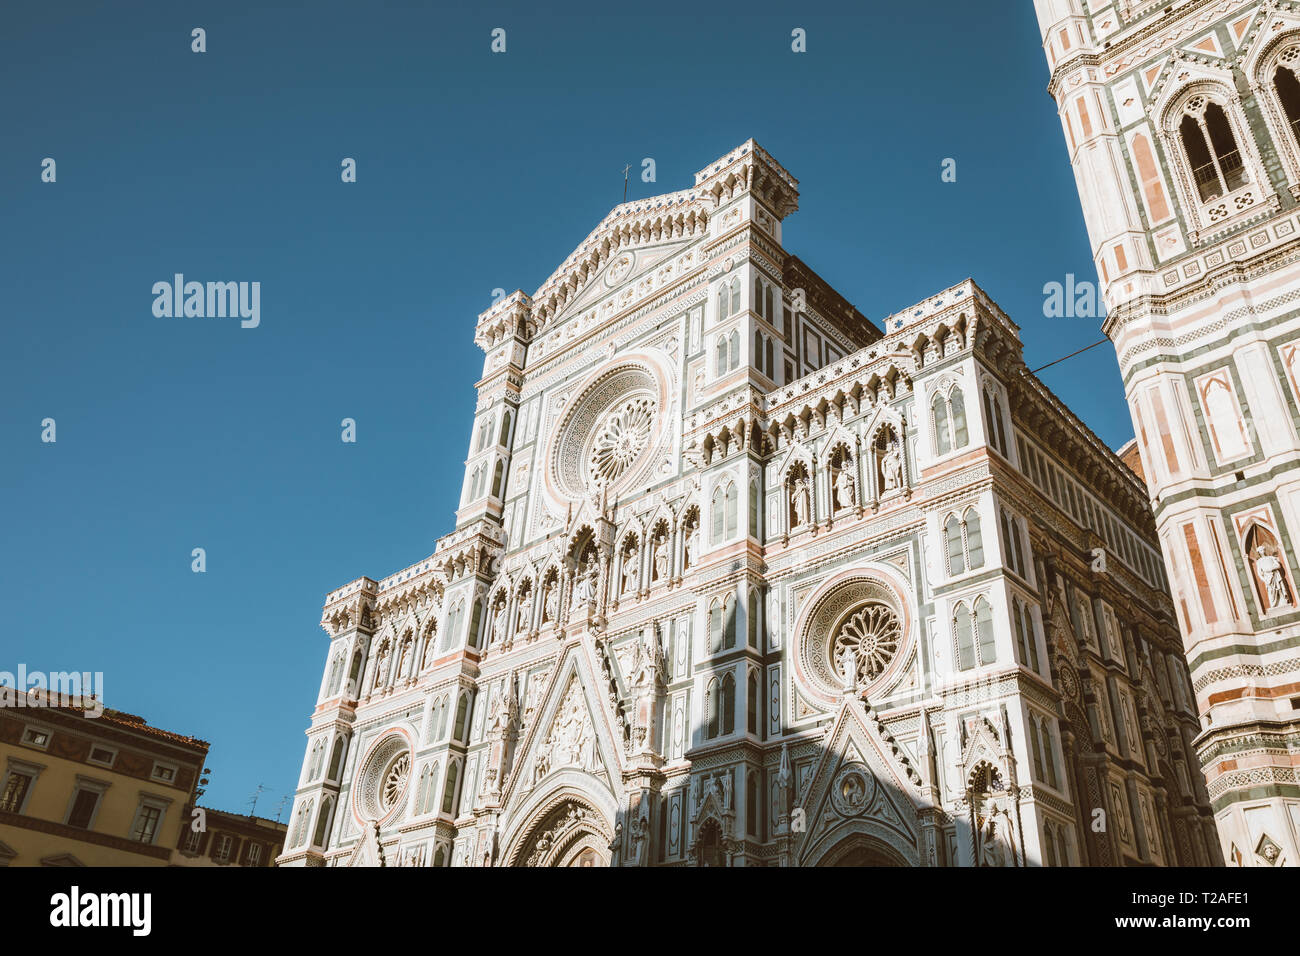 Acercamiento de la fachada de la Cattedrale di Santa Maria del Fiore (Catedral de Santa María de la flor) es la catedral de Florencia. Foto de stock